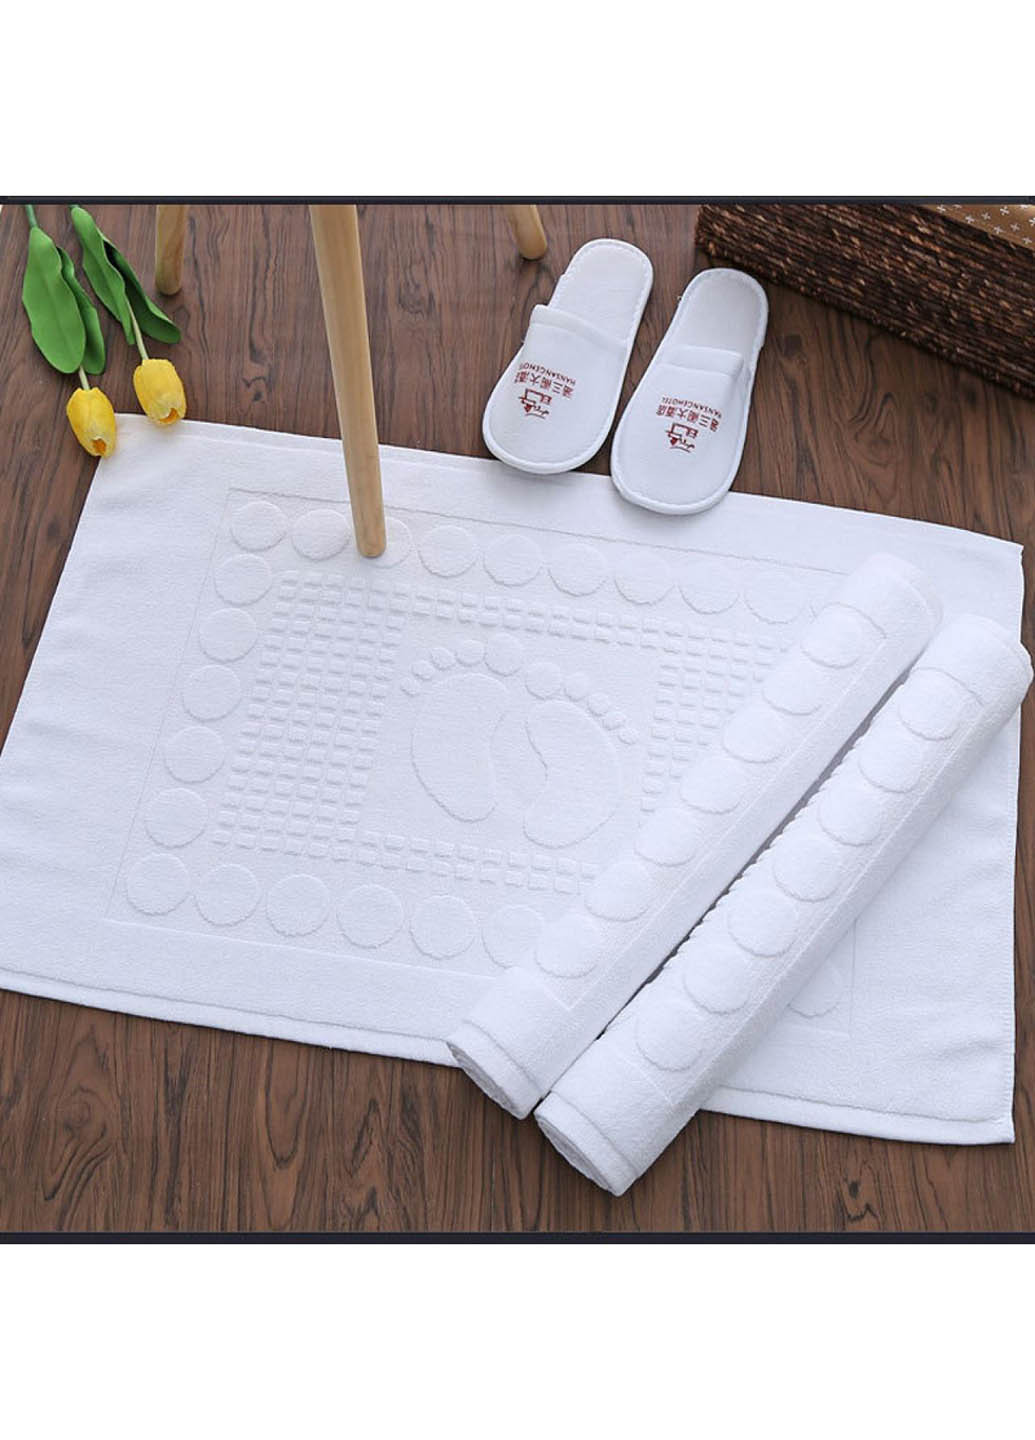 Homedec махровый коврик для ног 50*80 см. однотонный белый производство - Турция